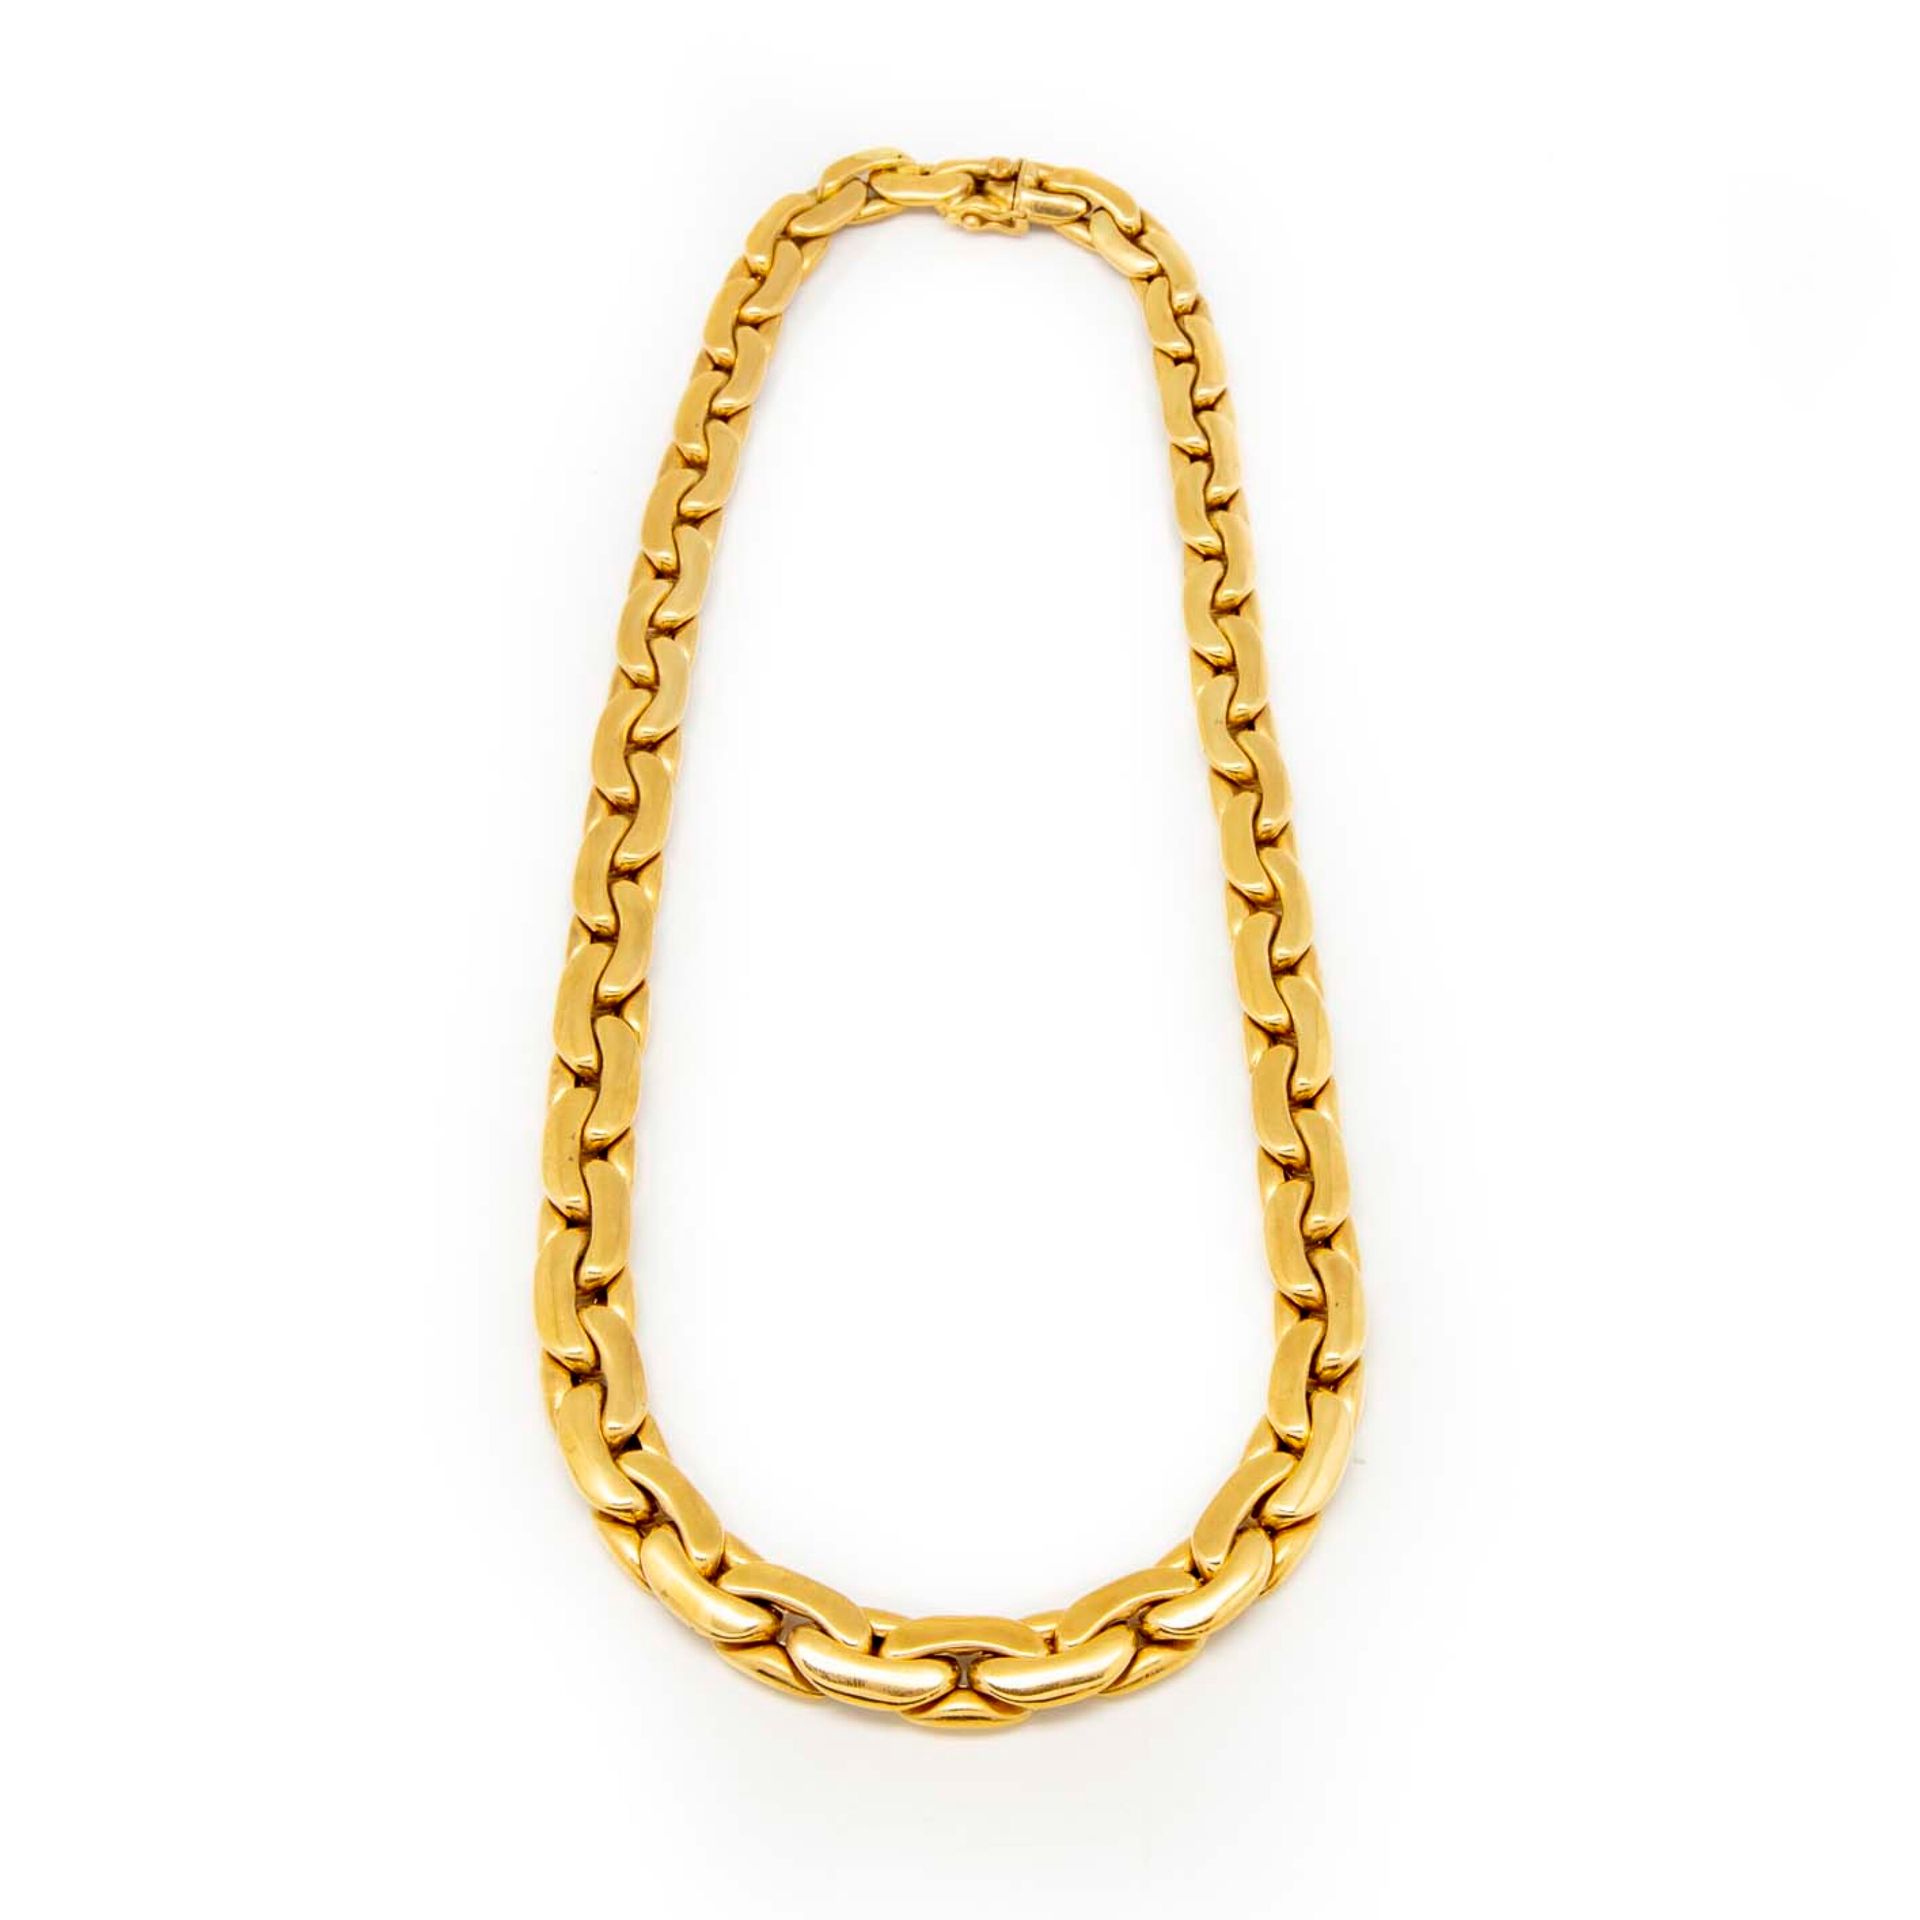 Null Gelbgold-Halskette mit flachen, gegliederten Gliedern

Gewicht : 62 g.